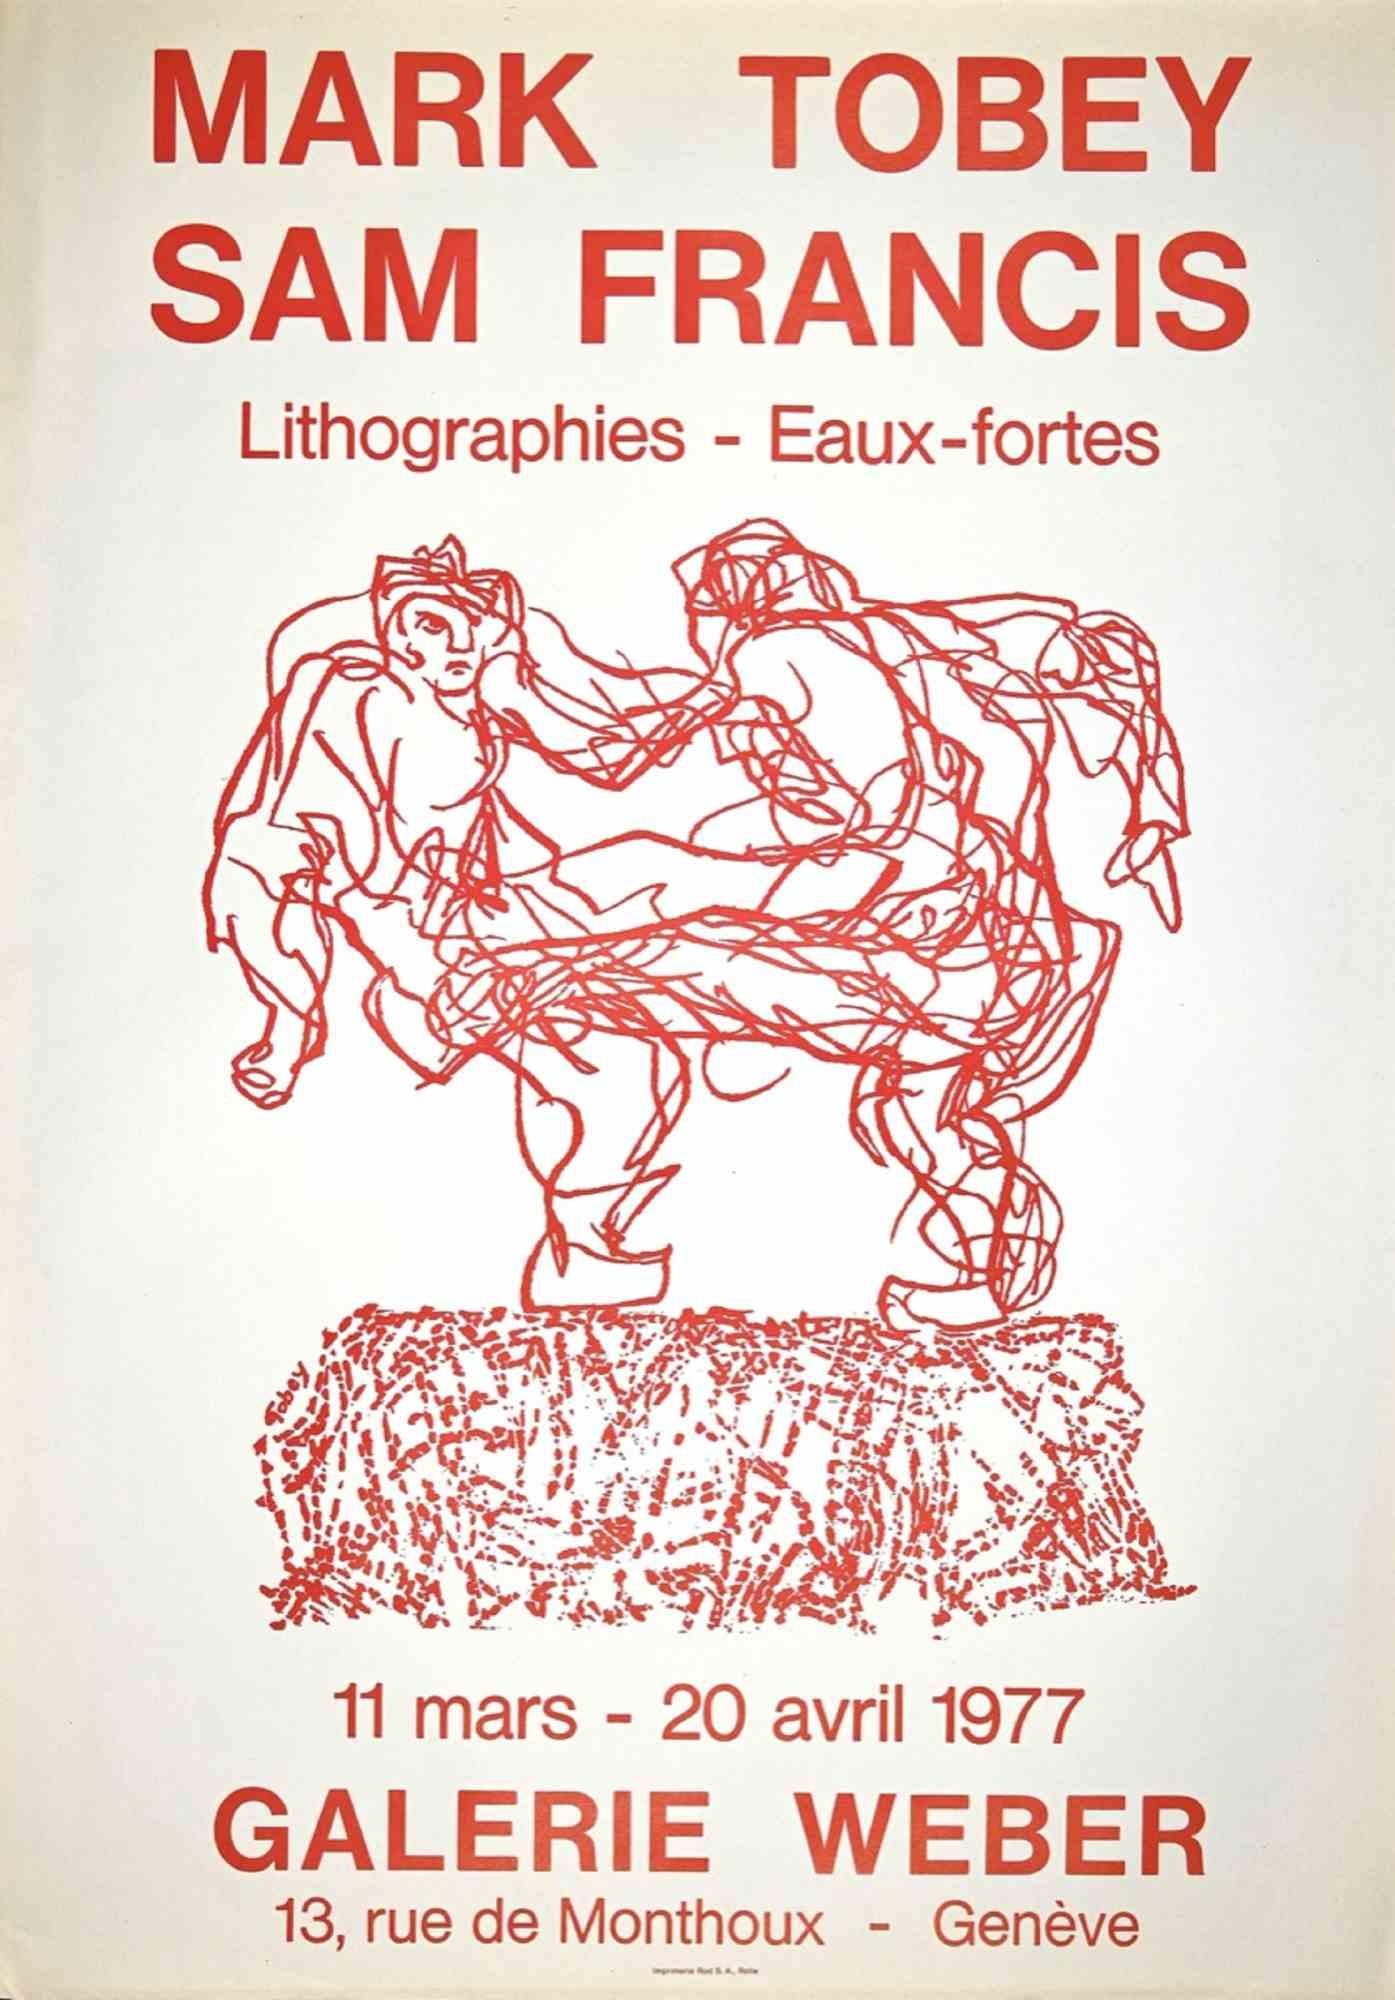 Figurative Print Unknown - Affiche de l'exposition Mark Tobey et Sam Francis - Impression lithographique - 1977